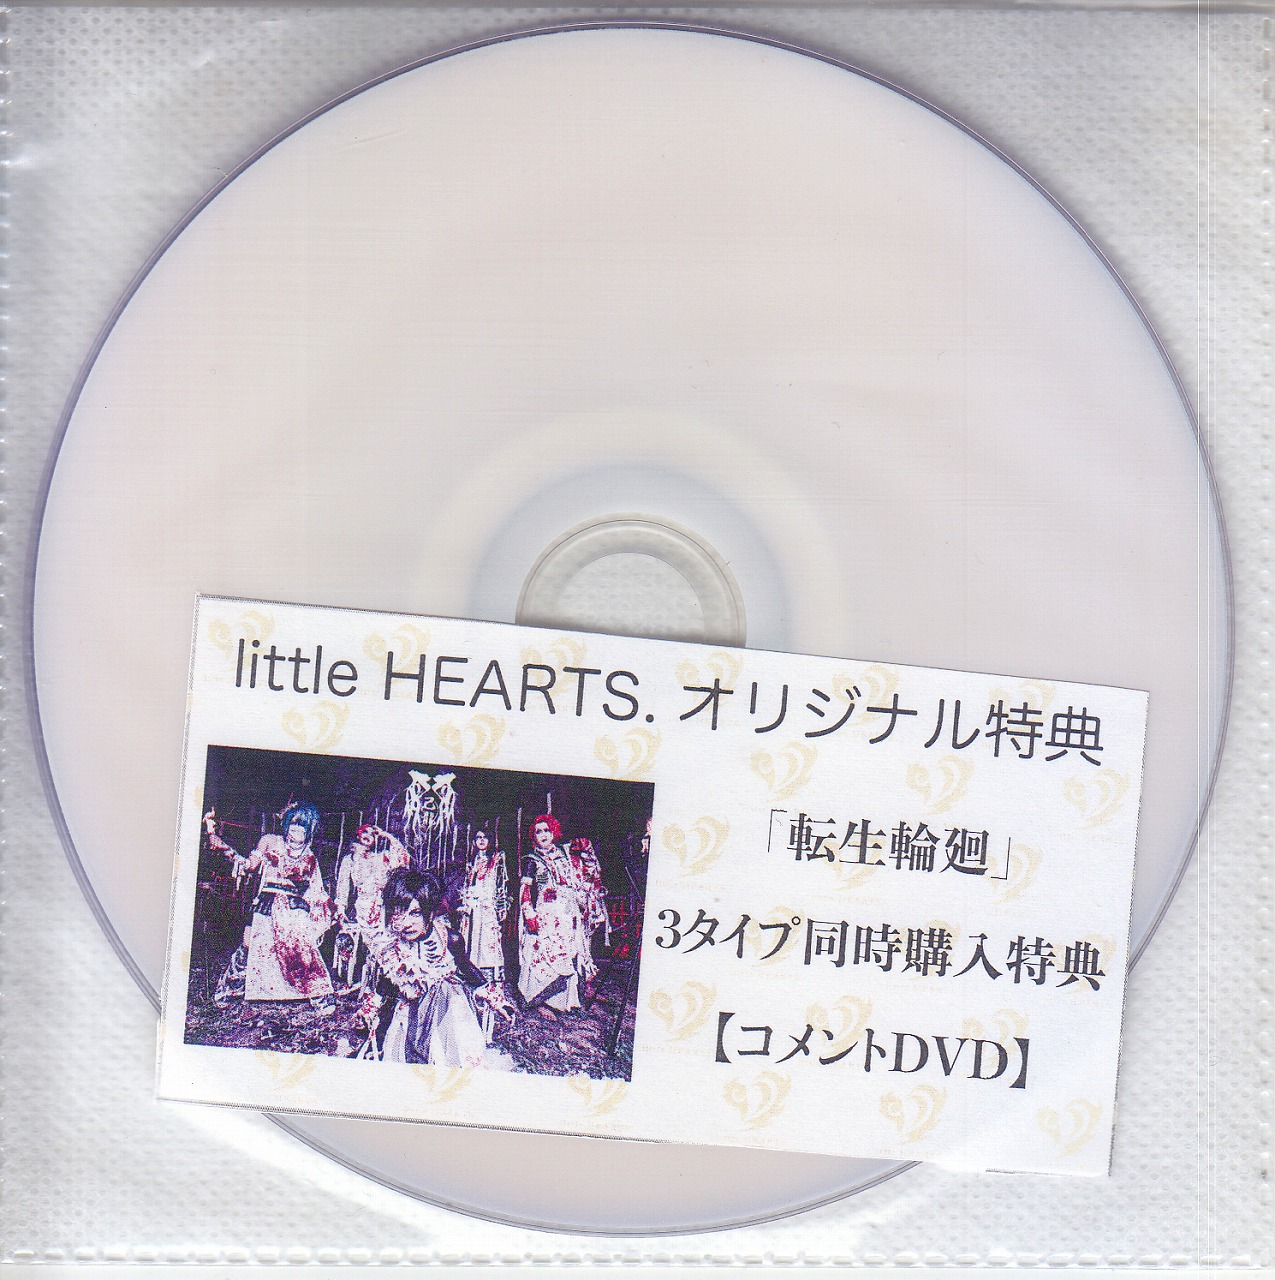 己龍 ( キリュウ )  の DVD 【little HEARTS.】転生輪廻 3タイプ同時購入特典コメントDVD